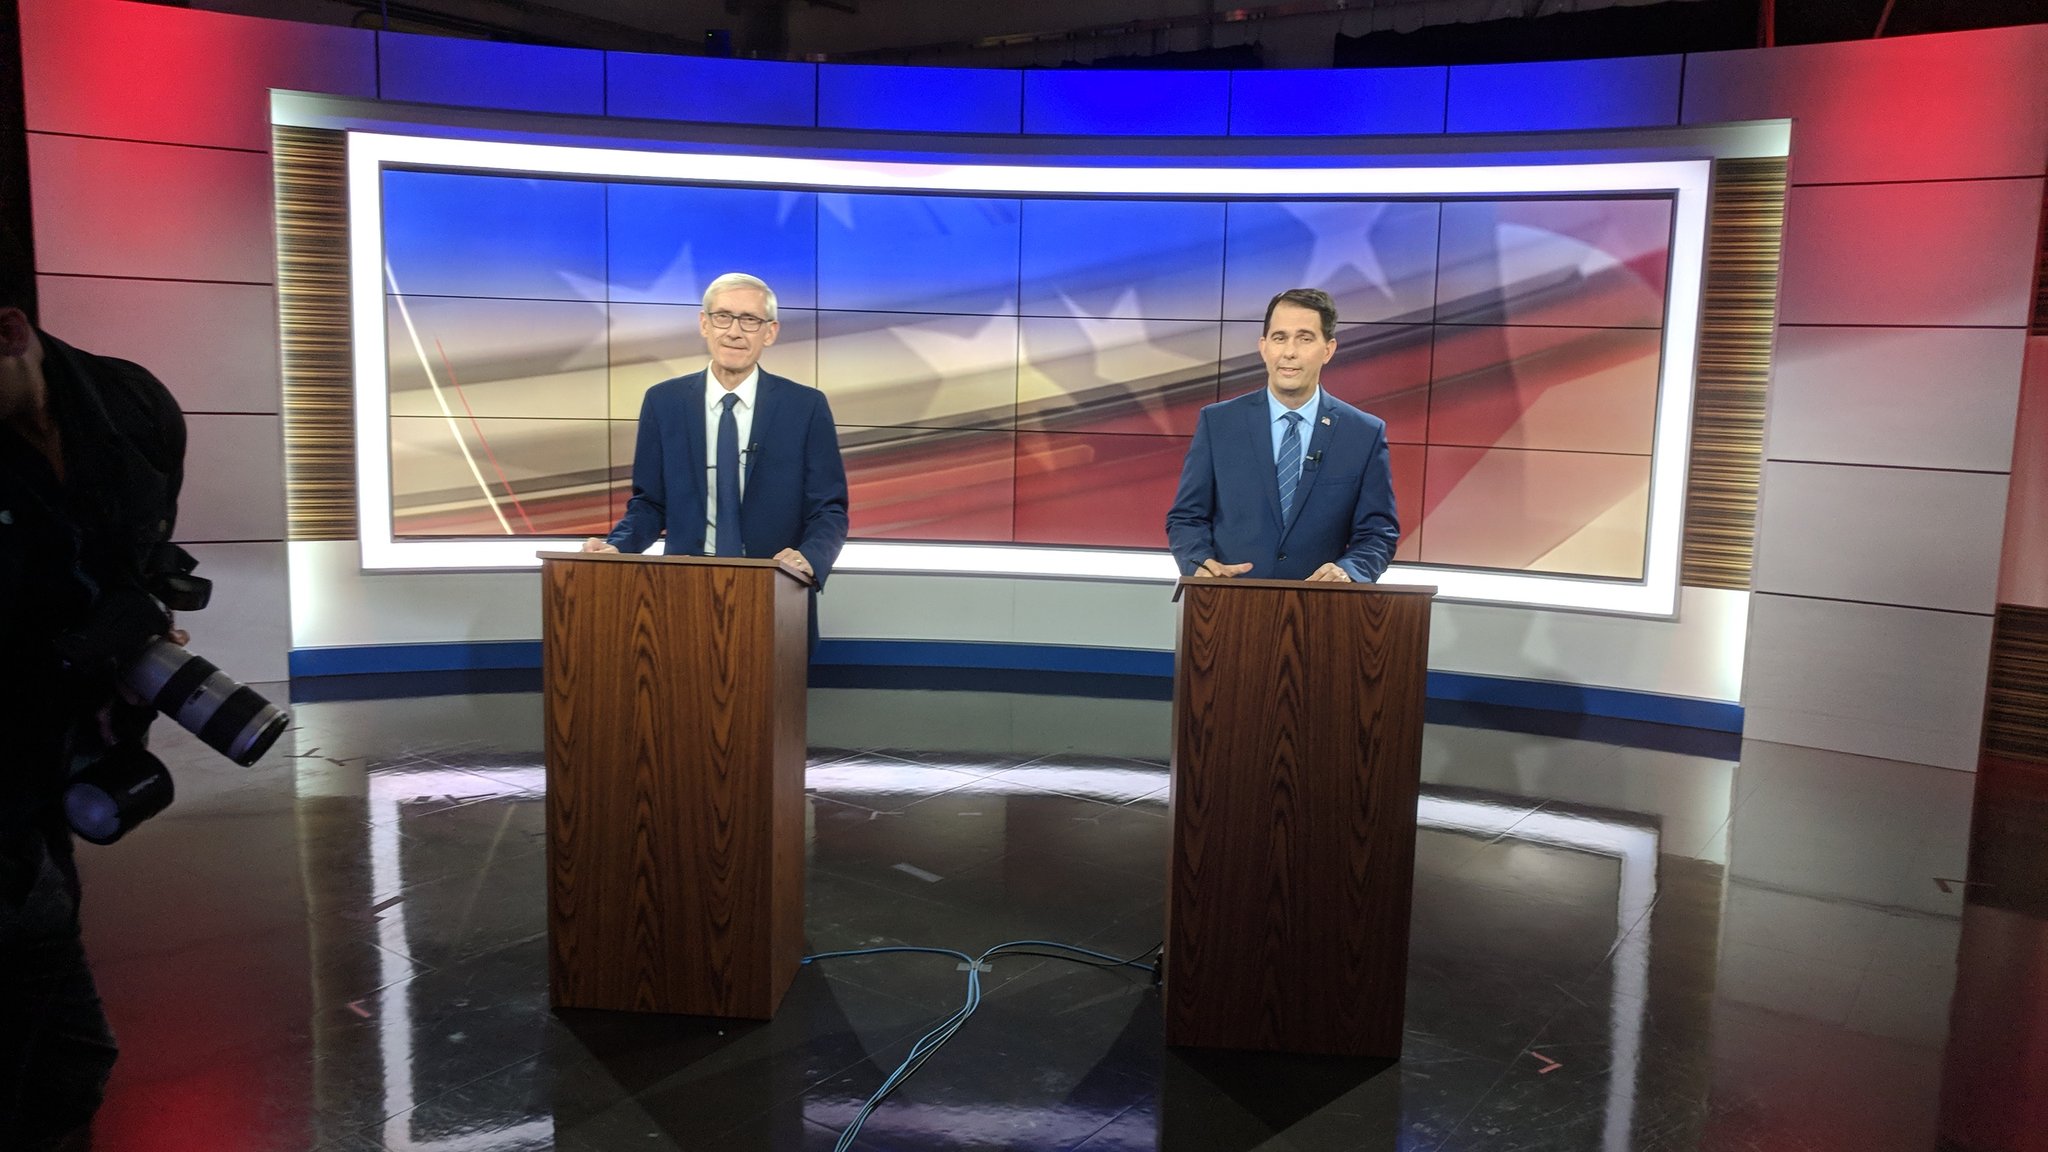 Tony Evers and Scott Walker debate in October 2018